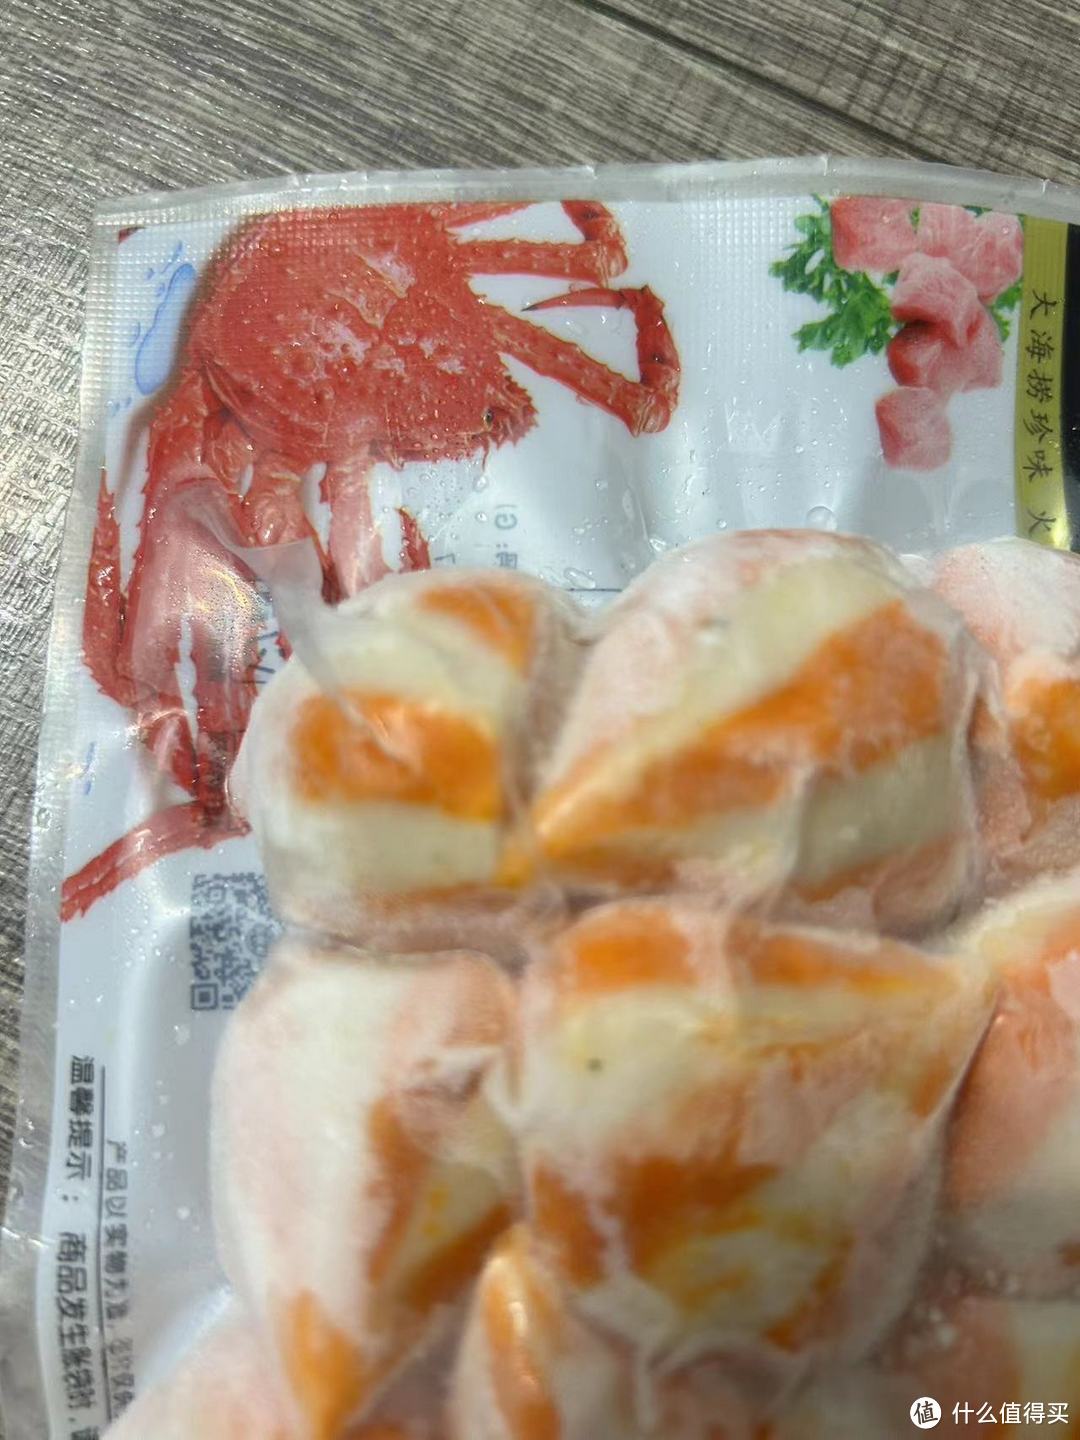 超值好物海霸王鱼籽包，火锅美味好选择